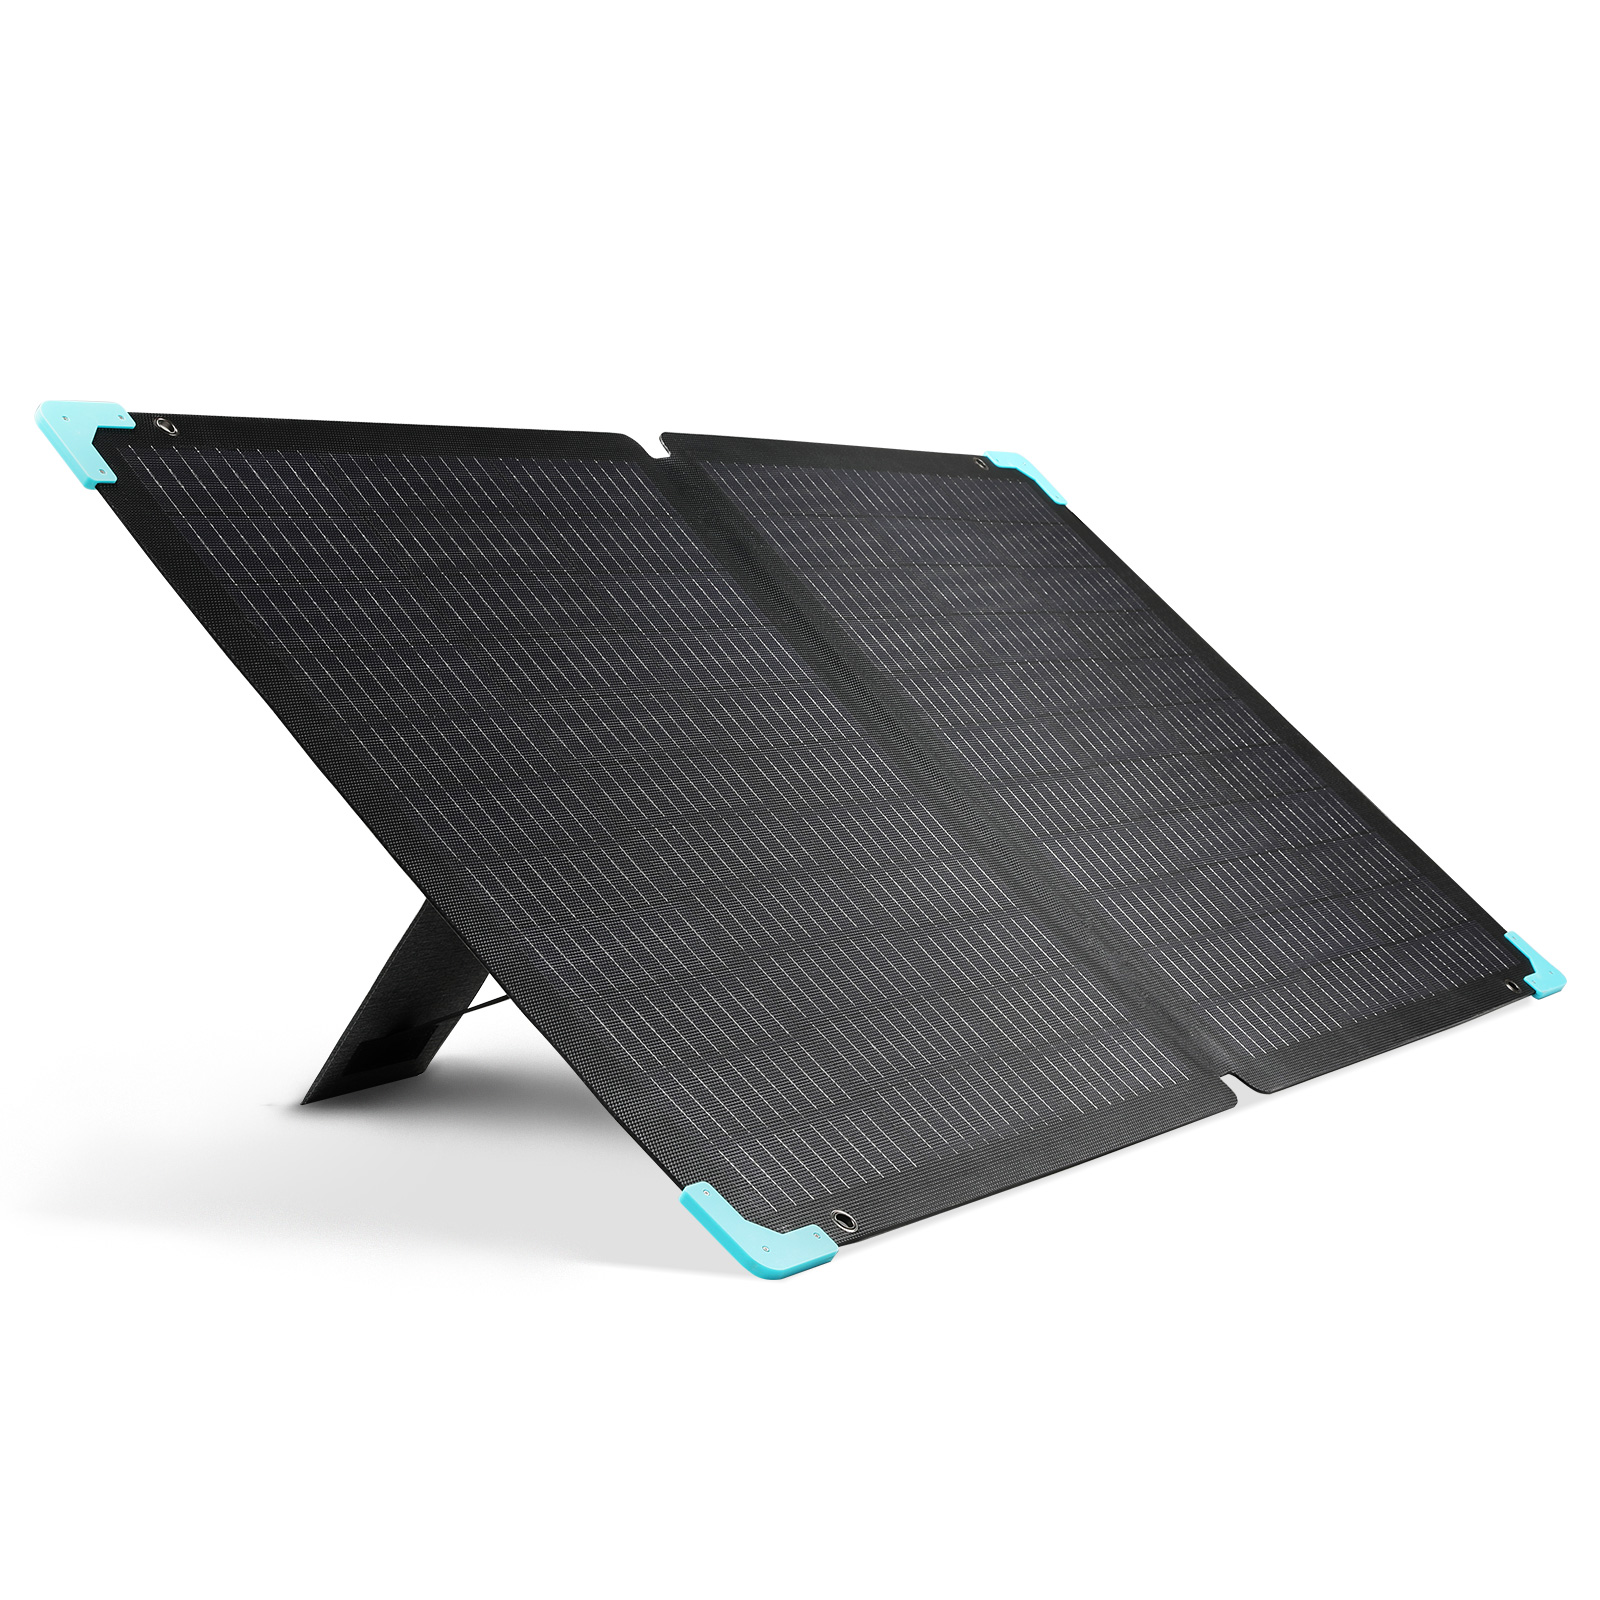 E.FLEX 120 portable solar panel